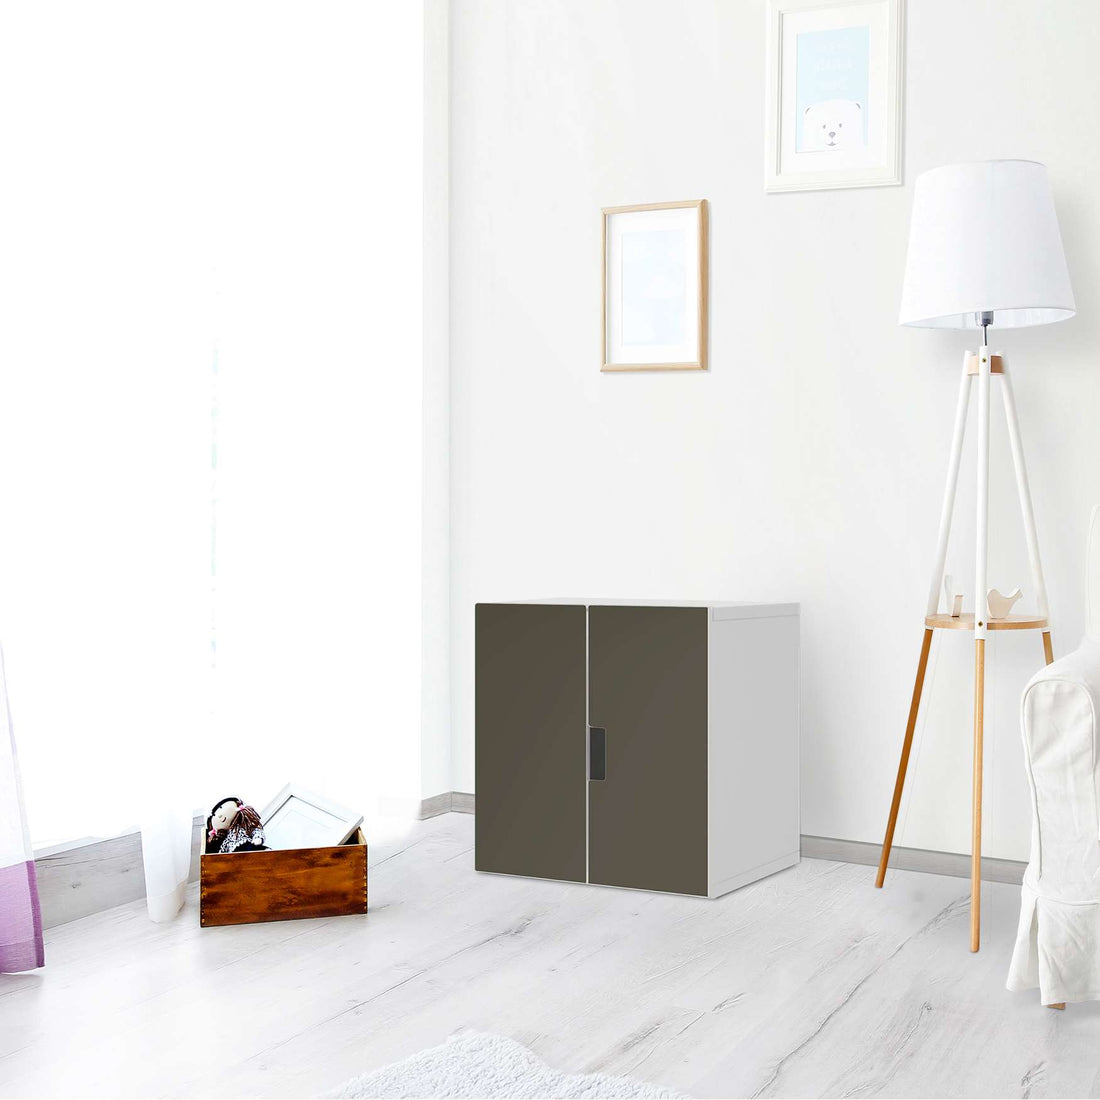 Selbstklebende Folie Braungrau Dark - IKEA Stuva Schrank - 2 kleine Türen - Wohnzimmer